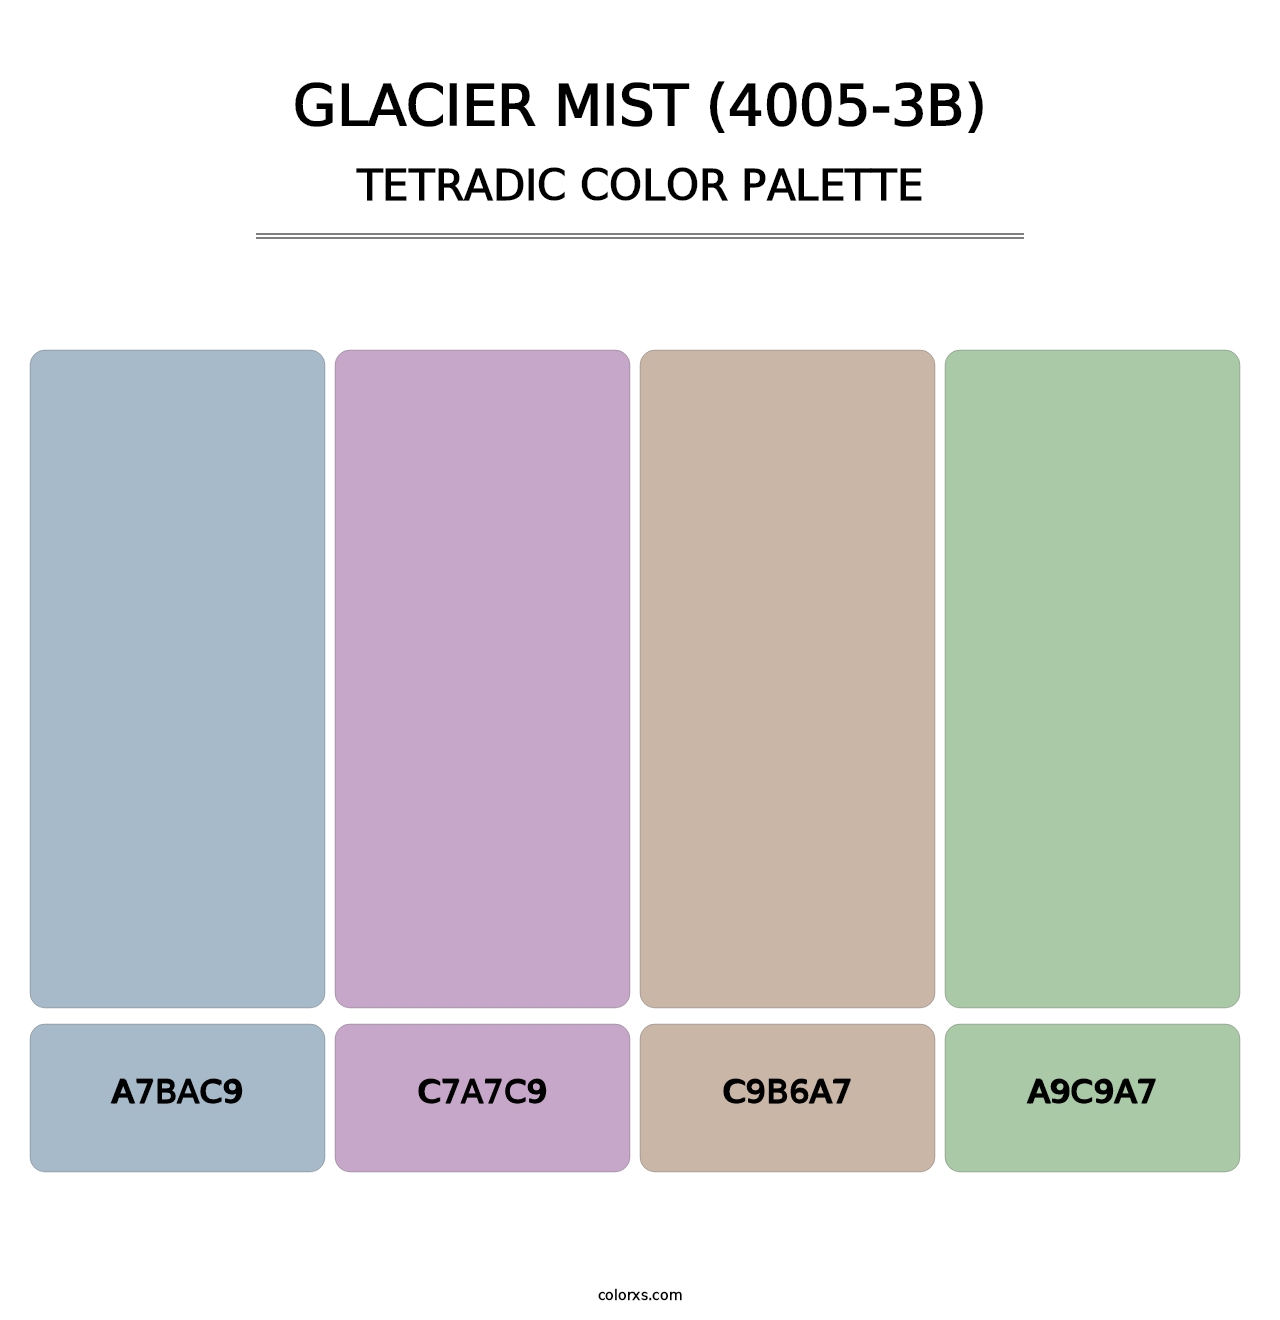 Glacier Mist (4005-3B) - Tetradic Color Palette